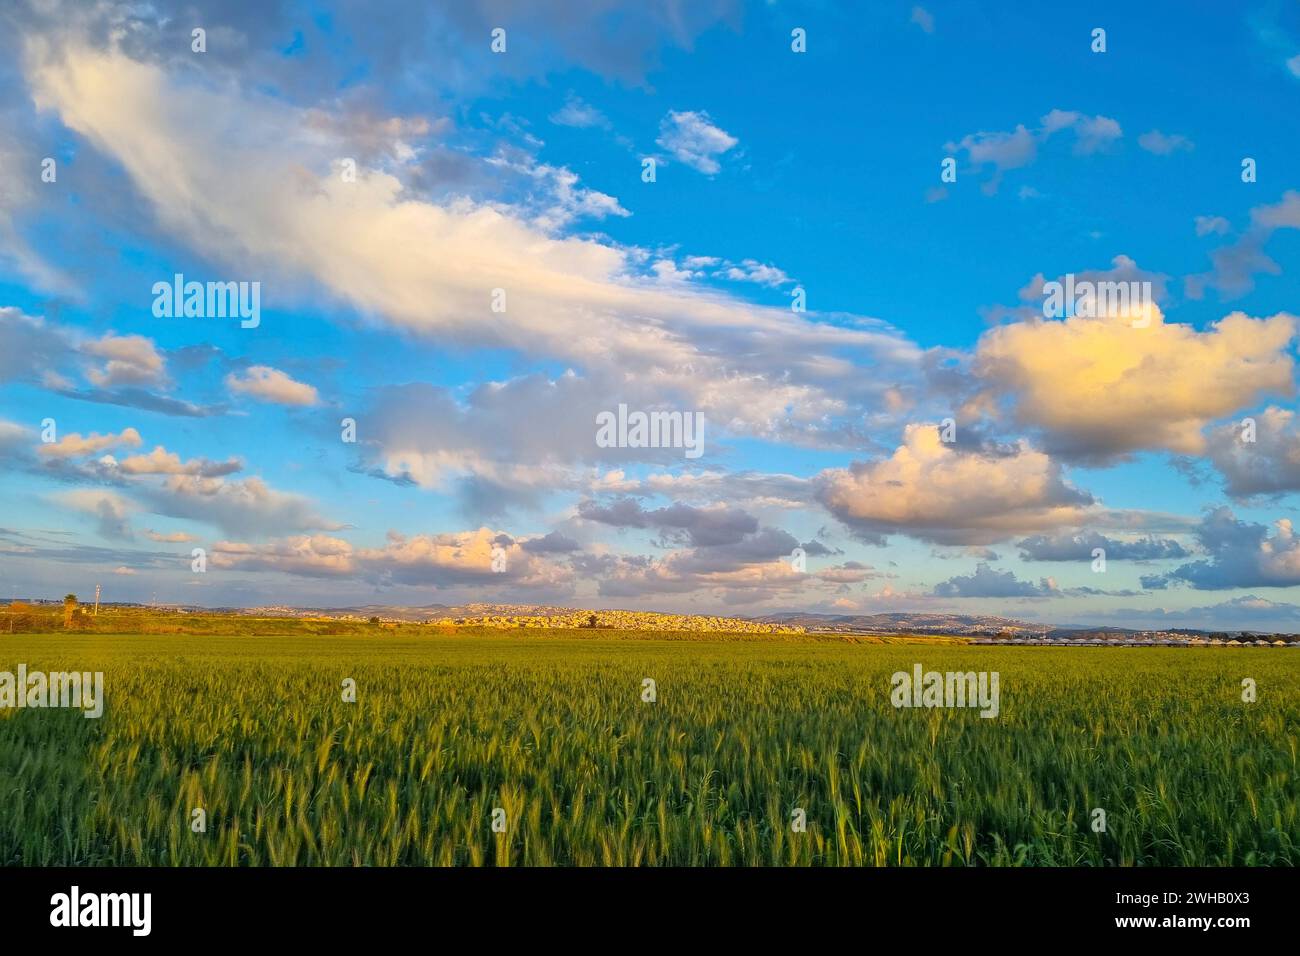 Campo di grano maturo con uno splendido sfondo di nuvole fotografato in Israele a marzo Foto Stock